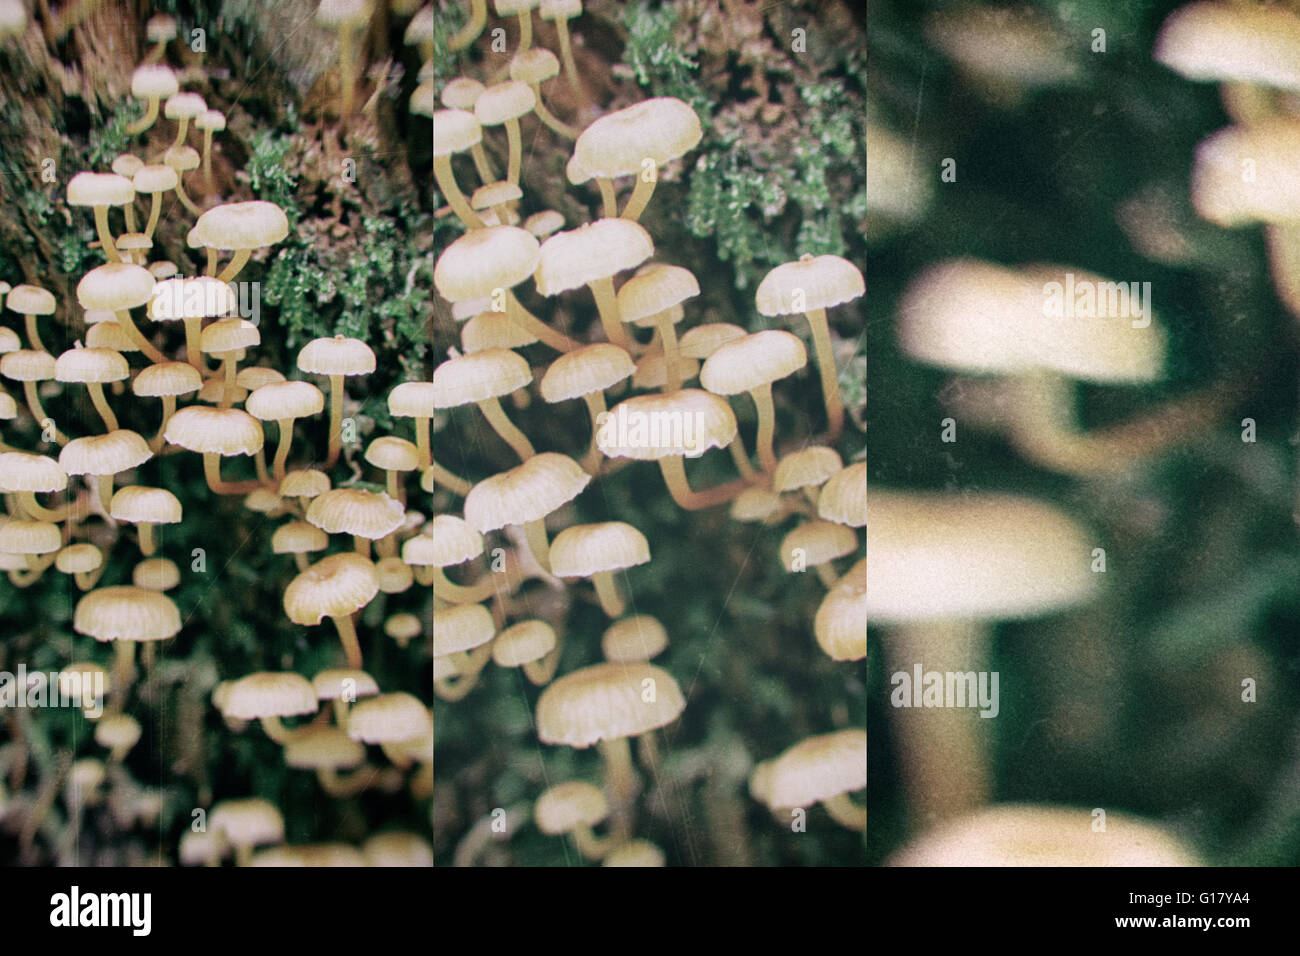 Abstraktes Bild der Vergiftung ungenießbare Pilze Stockfoto